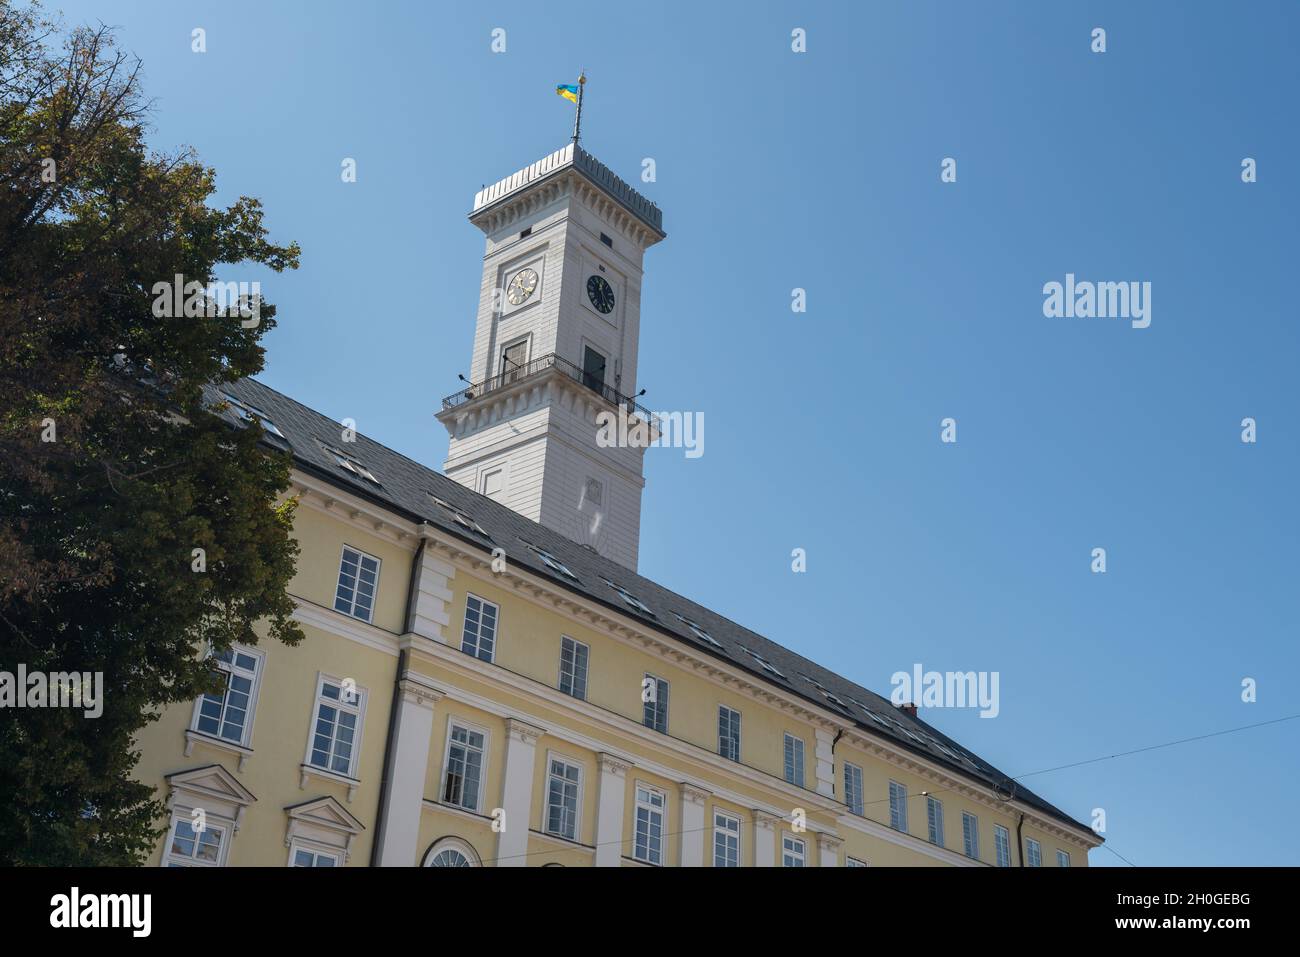 Tour de la mairie de Lviv - Lviv, Ukraine Banque D'Images